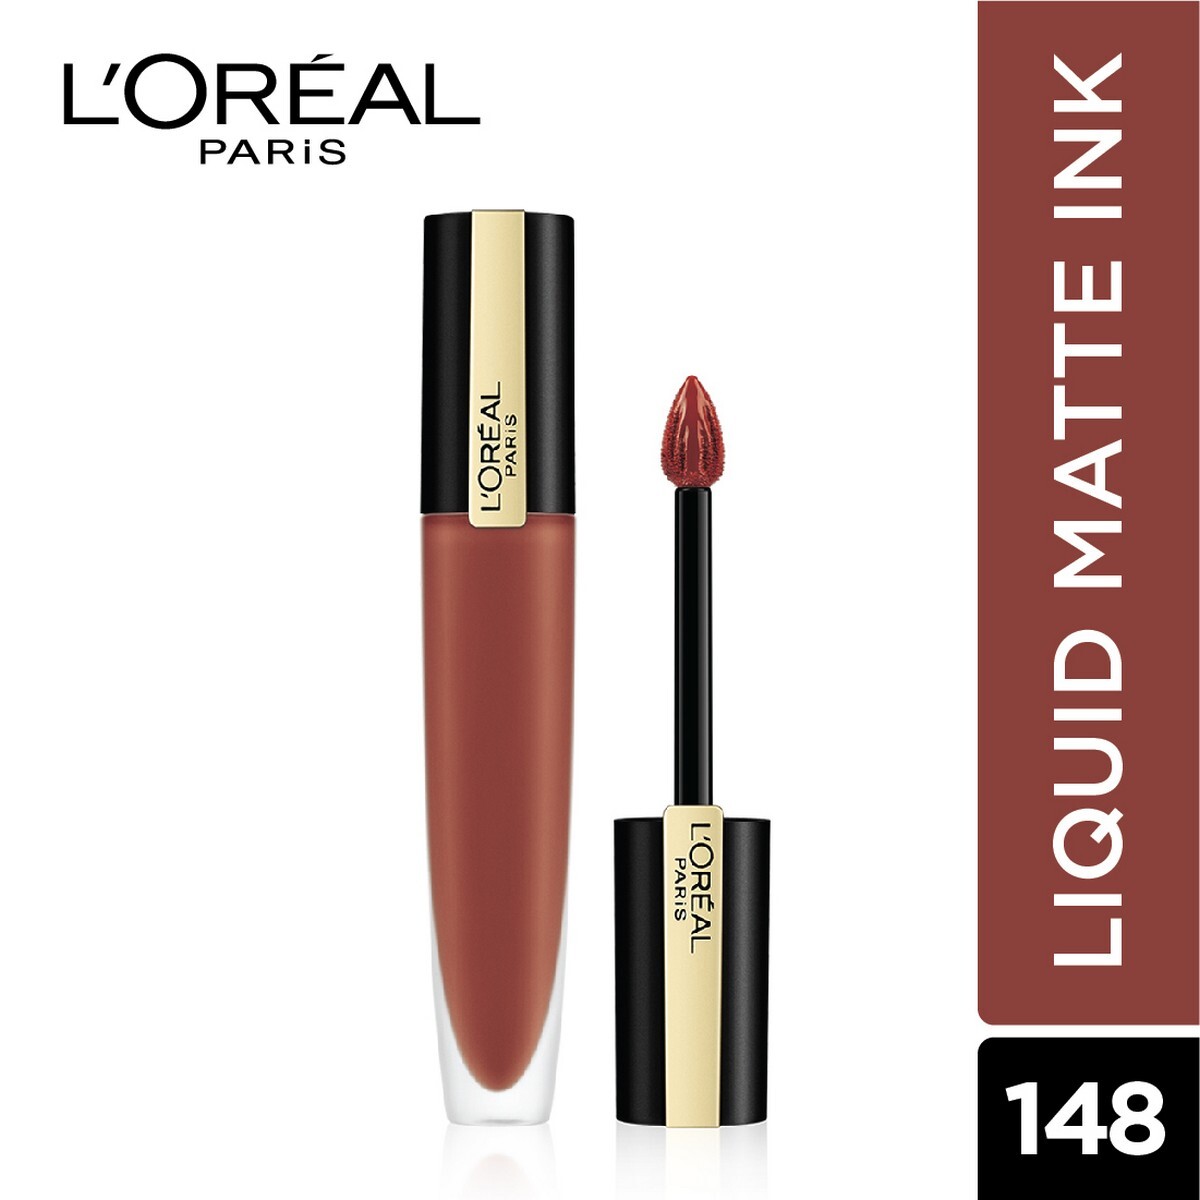 L'Oreal Paris Rouge Signature Matte Liquid Lipstick, 148 I Hunt